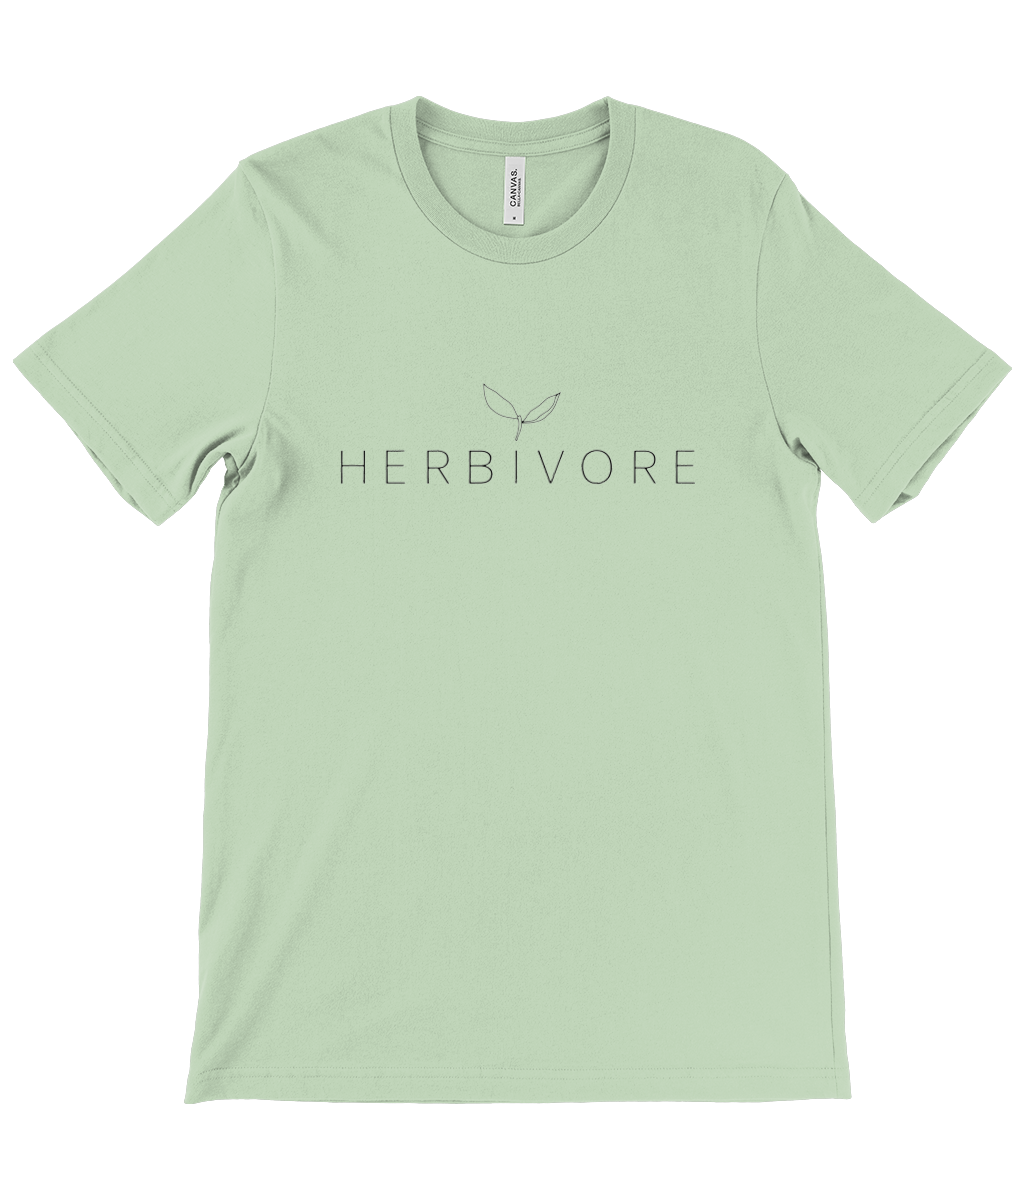 'Herbivore' Unisex T-Shirt